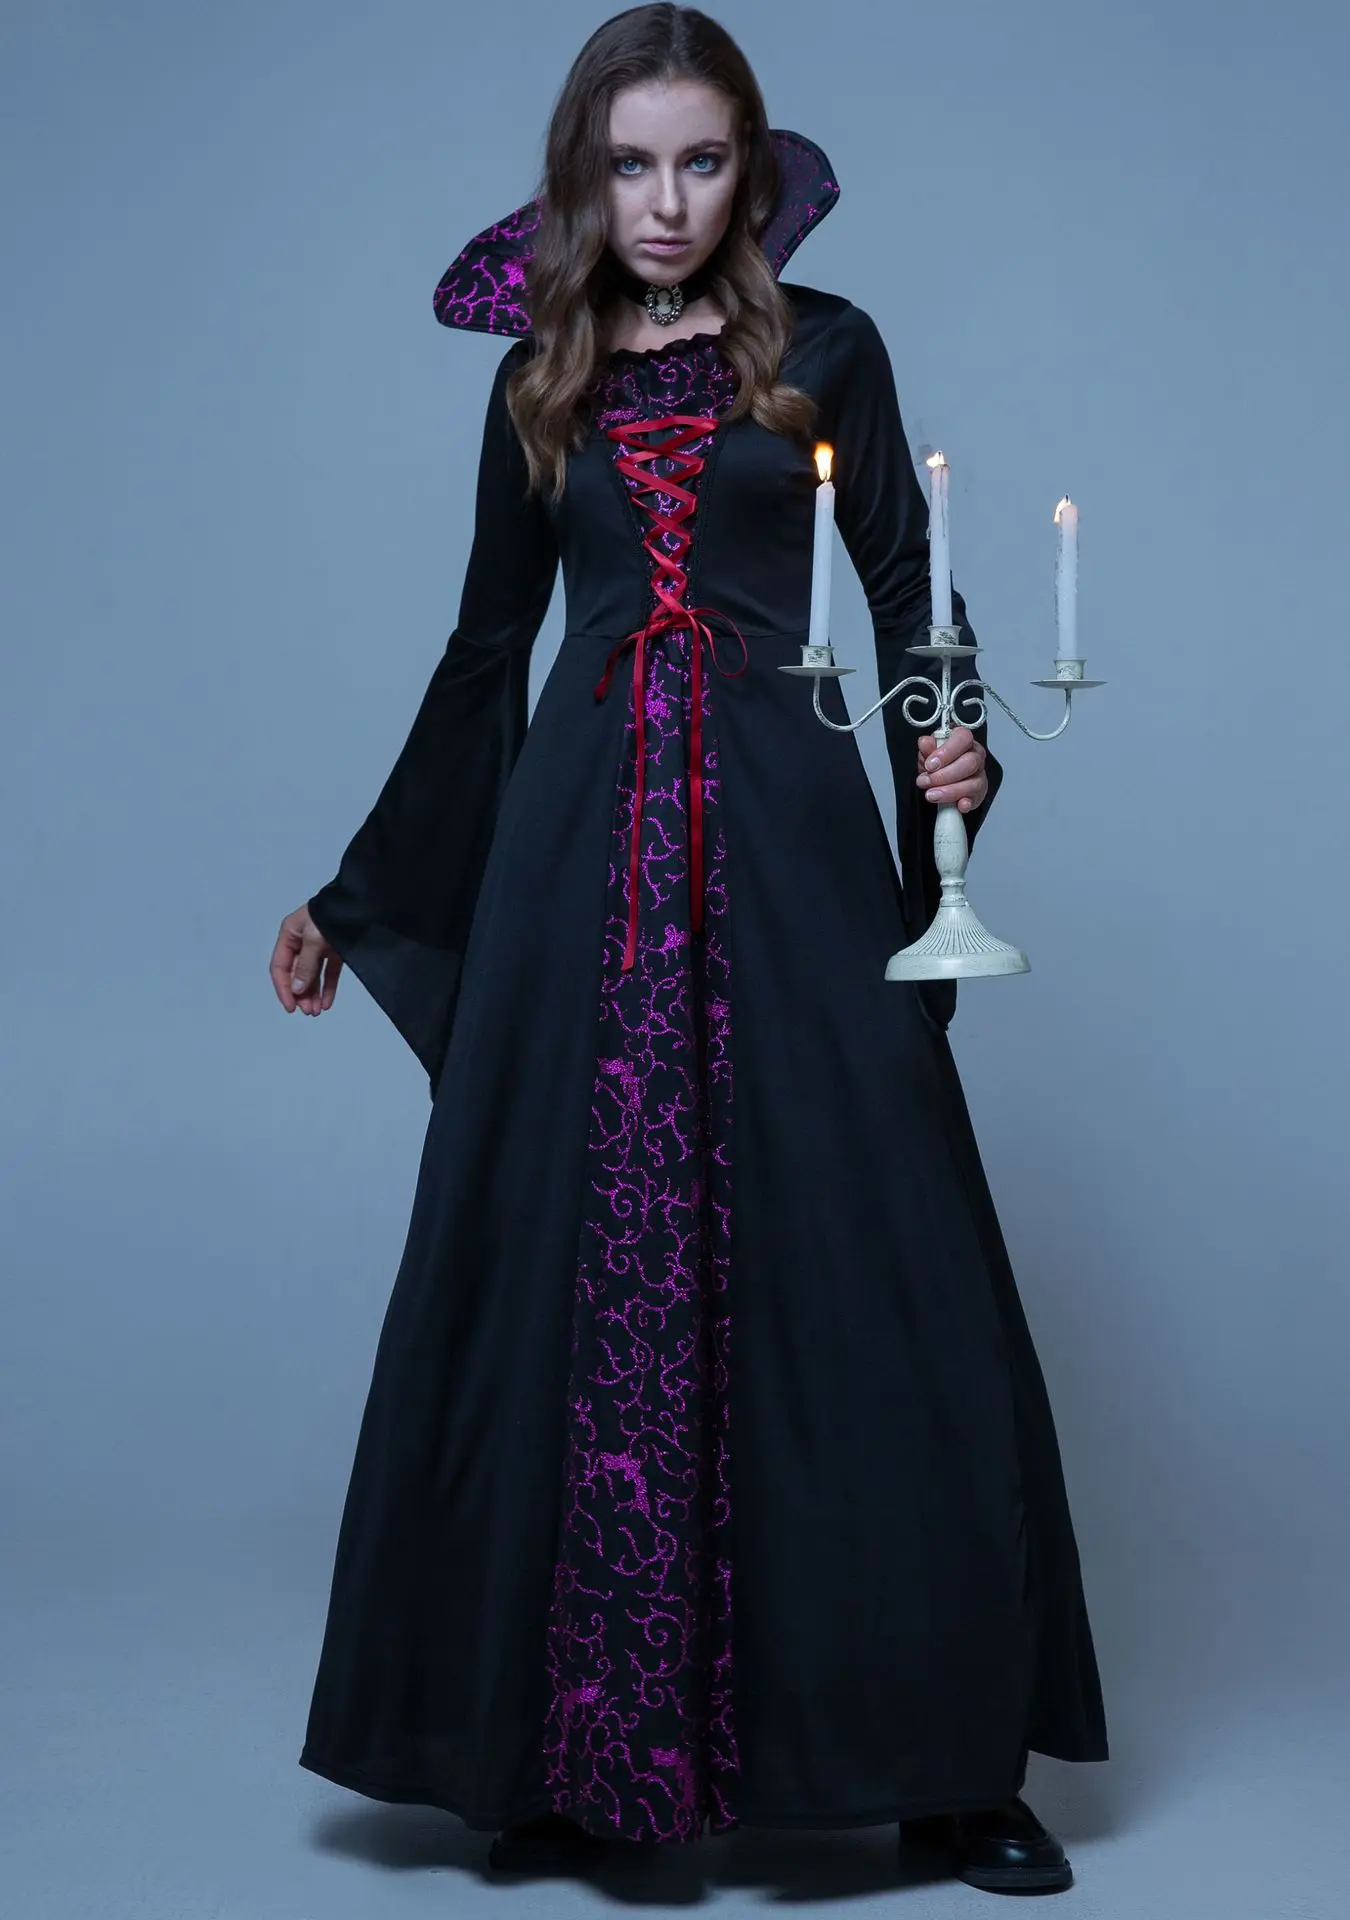 Robe de Vampire Gothique Rétro, Costume de Reine, Cour Médiévale d'Halloween